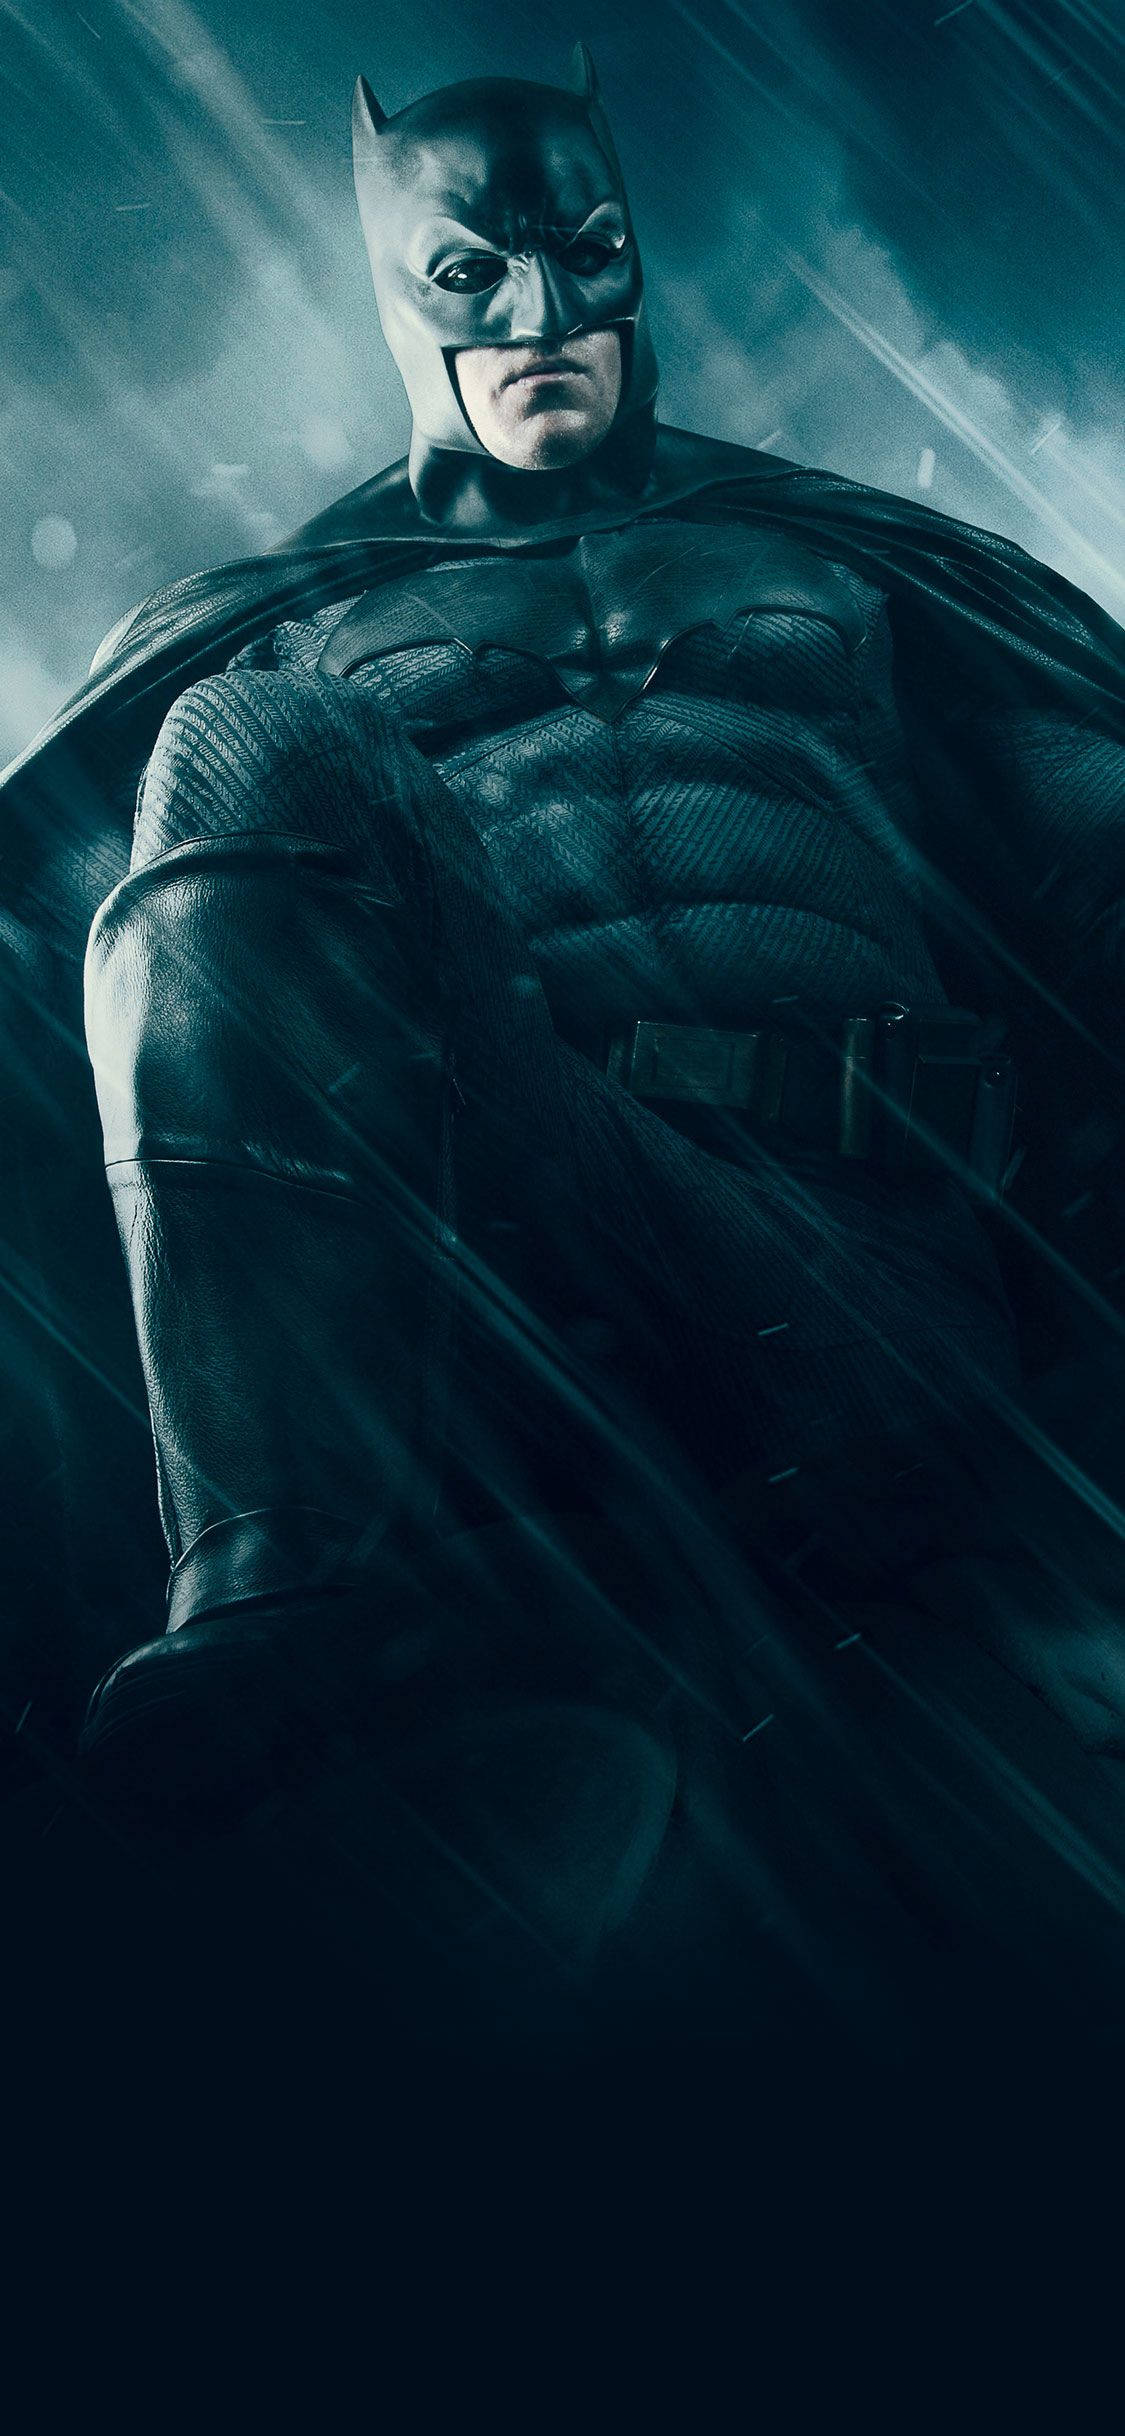 Batman In His Batsuit iPhone X Wallpaper